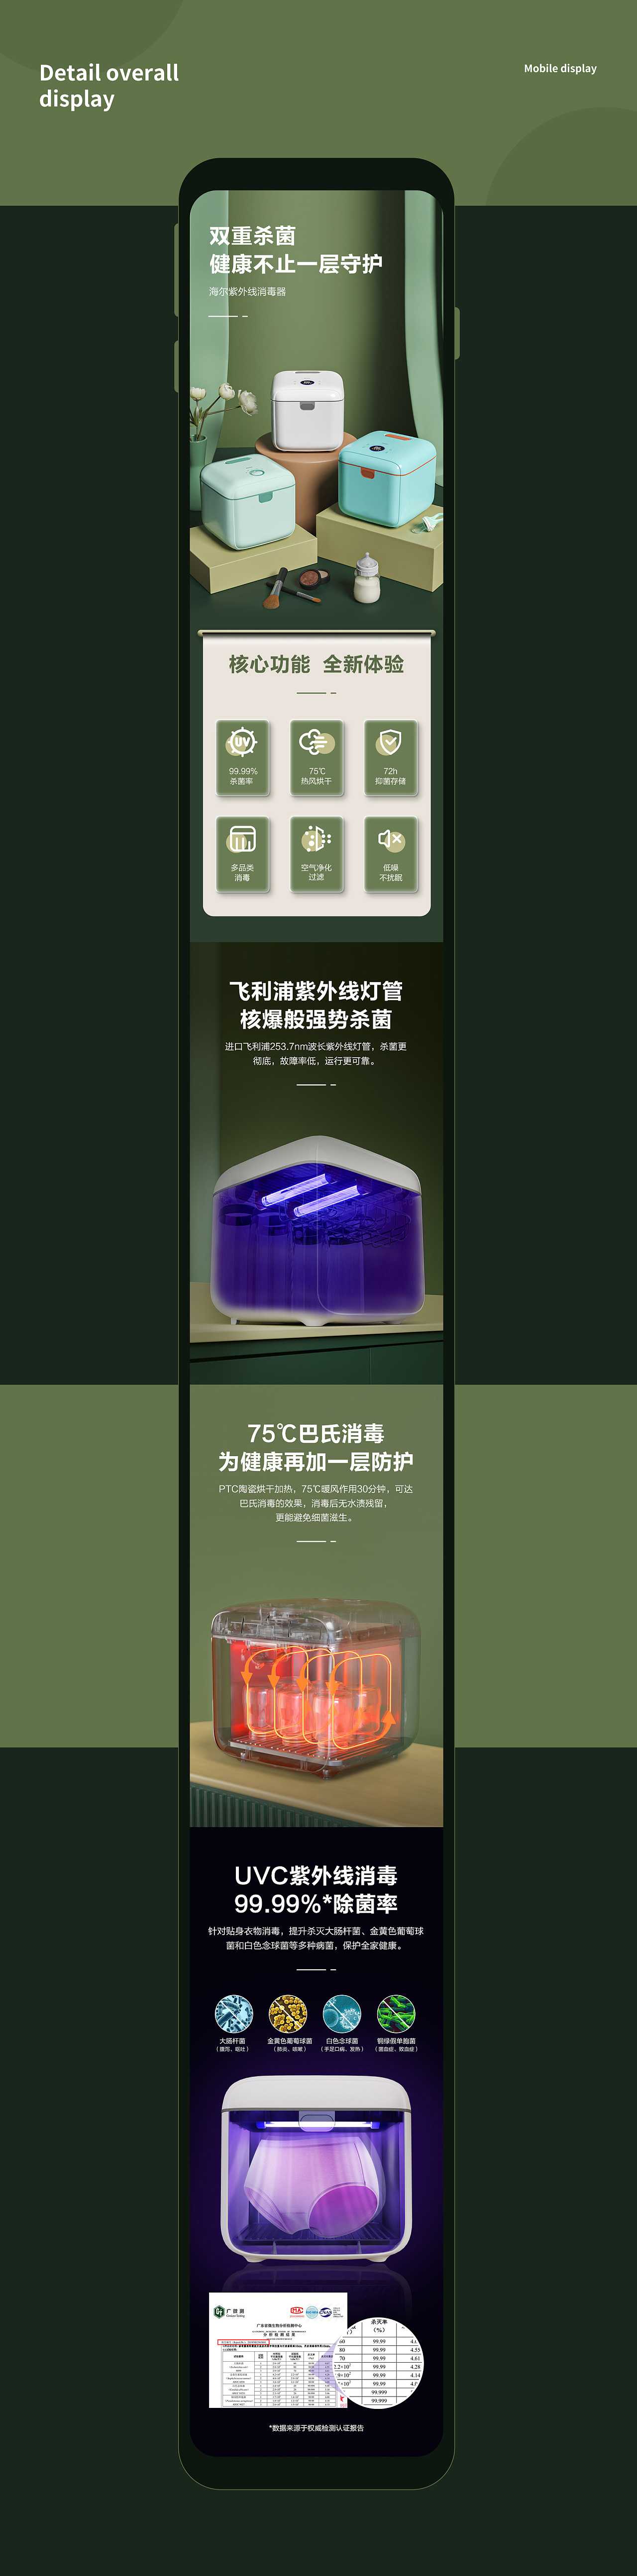 海尔紫外线消毒器